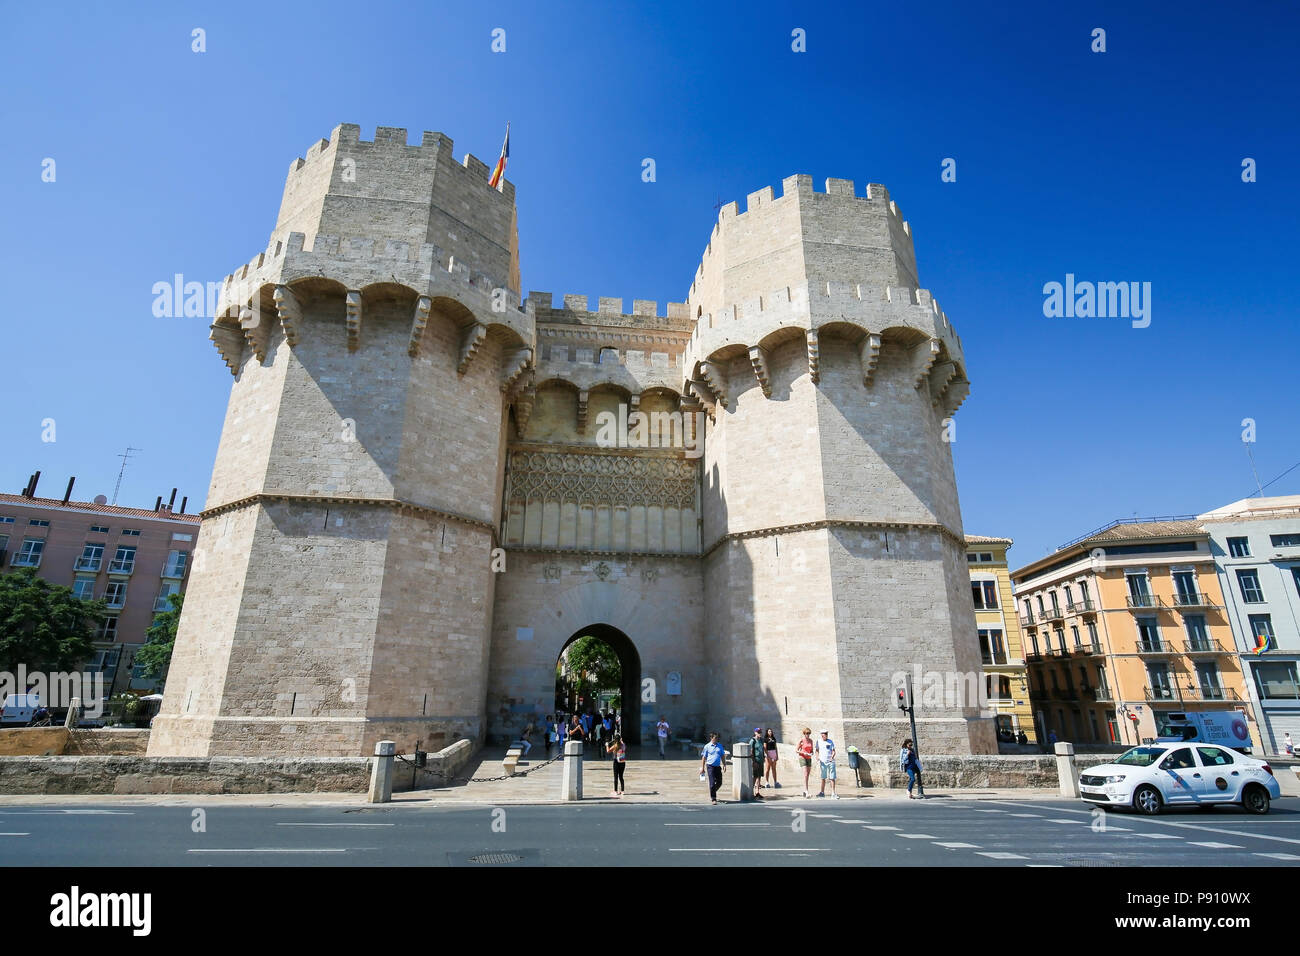 La facciata esterna della monumentale Serrano gate o gate Serrans, costruita nel XIV secolo nel centro di Valencia, Spagna Foto Stock